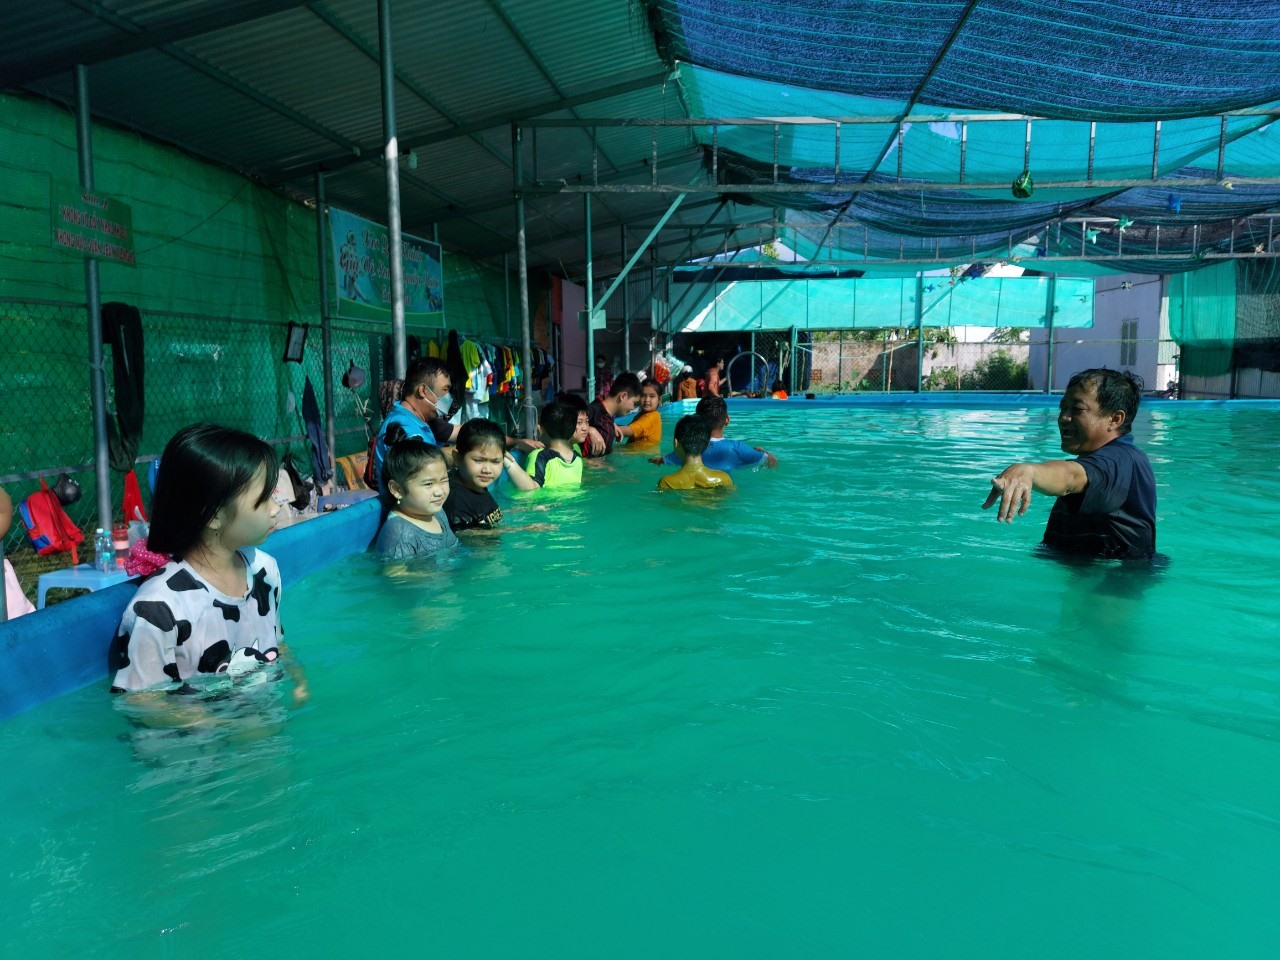 Lớp dạy bơi miễn phí cho trẻ em do Thị đoàn thị xã Ngã Năm (Sóc Trăng) tổ chức vào tháng 7.2022